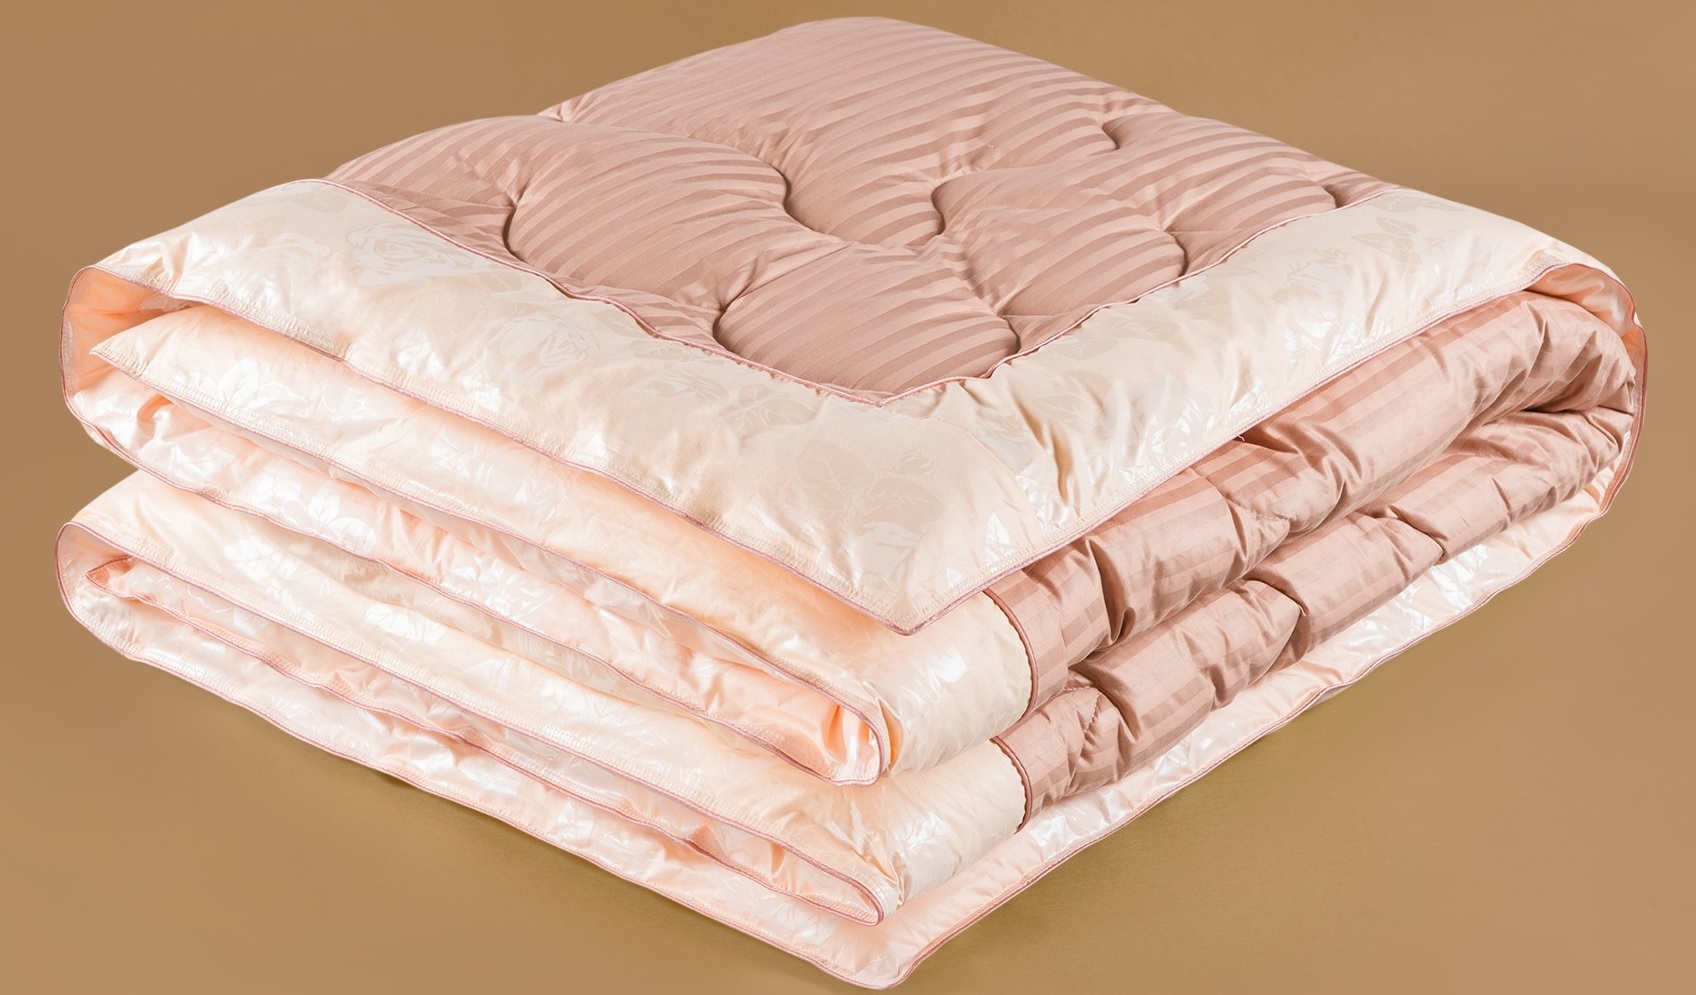 купить одеяло самсон кашемир в москве недорого